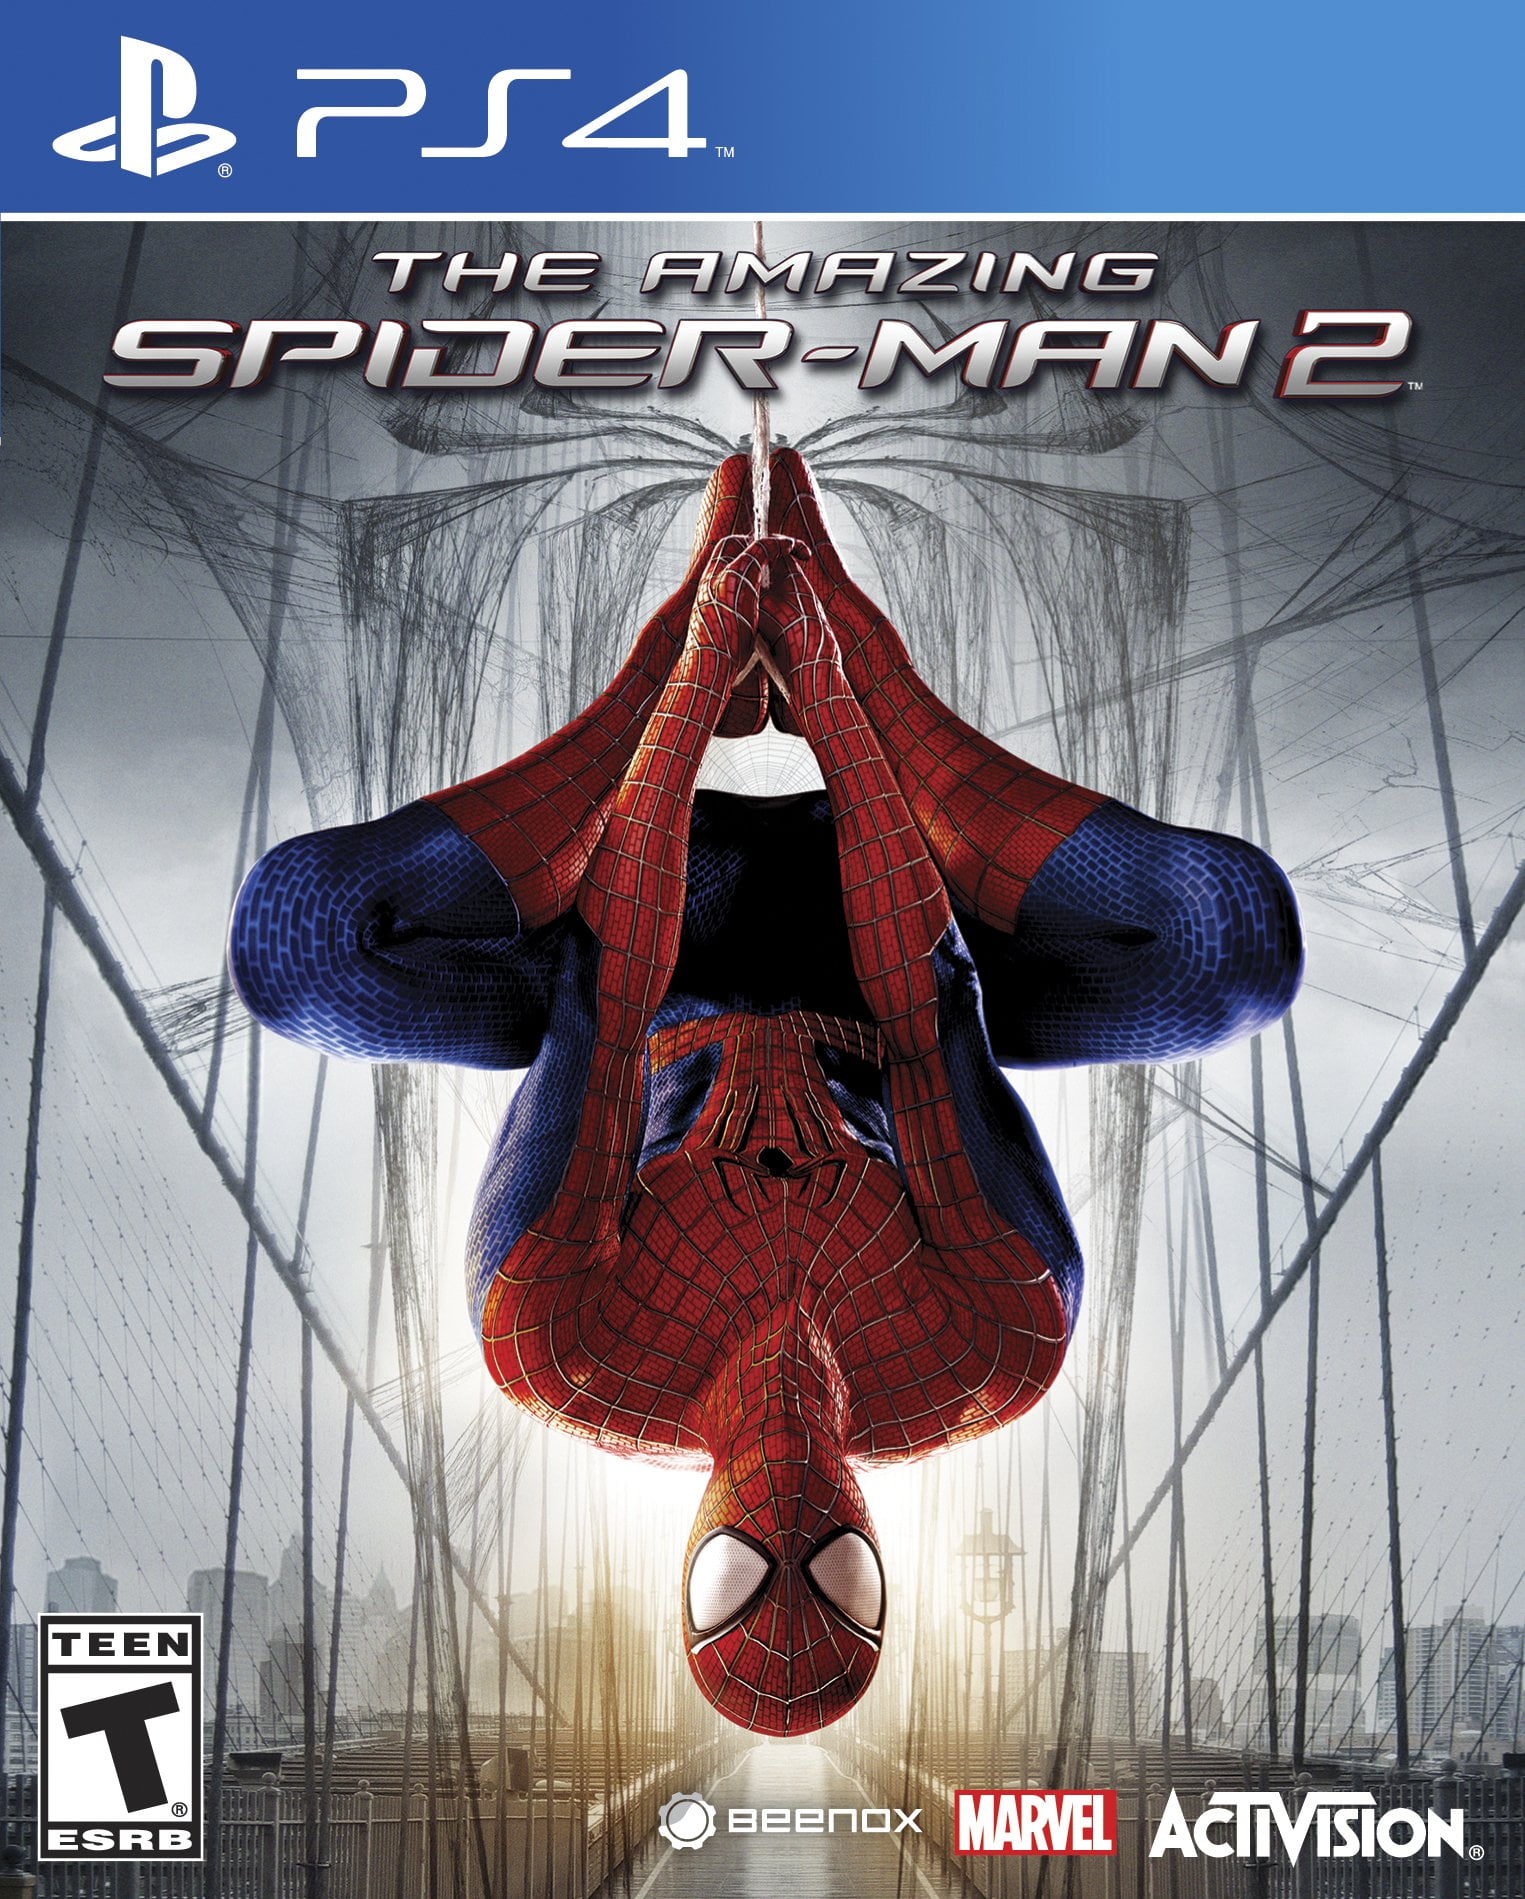 Spiderman 2 Ps5  Marvel spiderman art, Marvel spiderman, Amazing spiderman